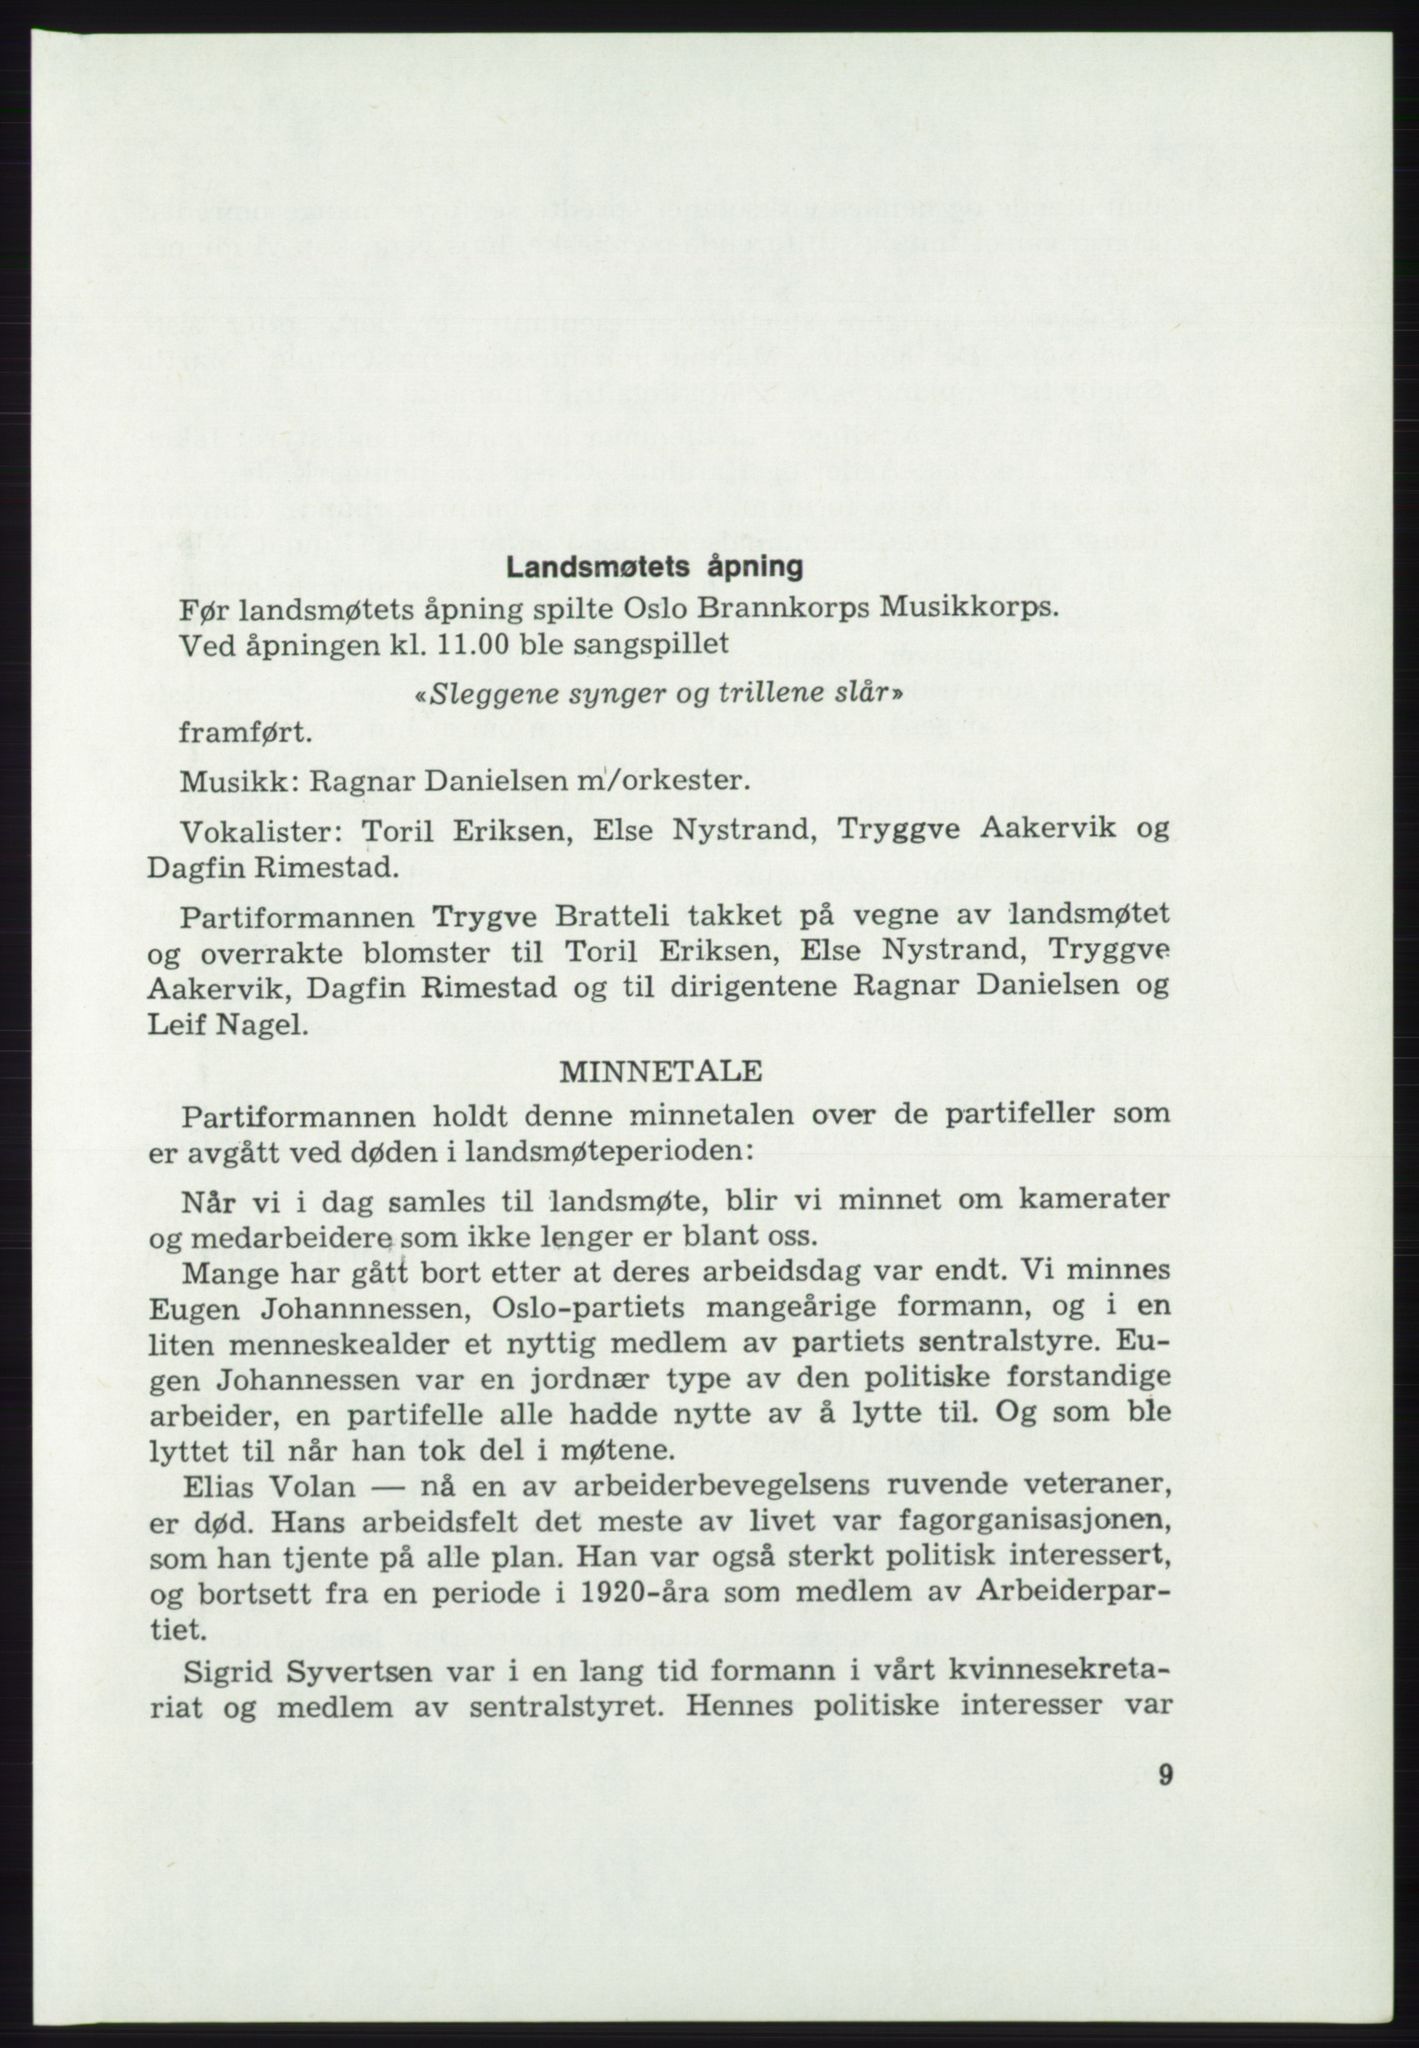 Det norske Arbeiderparti - publikasjoner, AAB/-/-/-: Protokoll over forhandlingene på det 46. ordinære landsmøte 20.-23. april 1975, 1975, p. 9